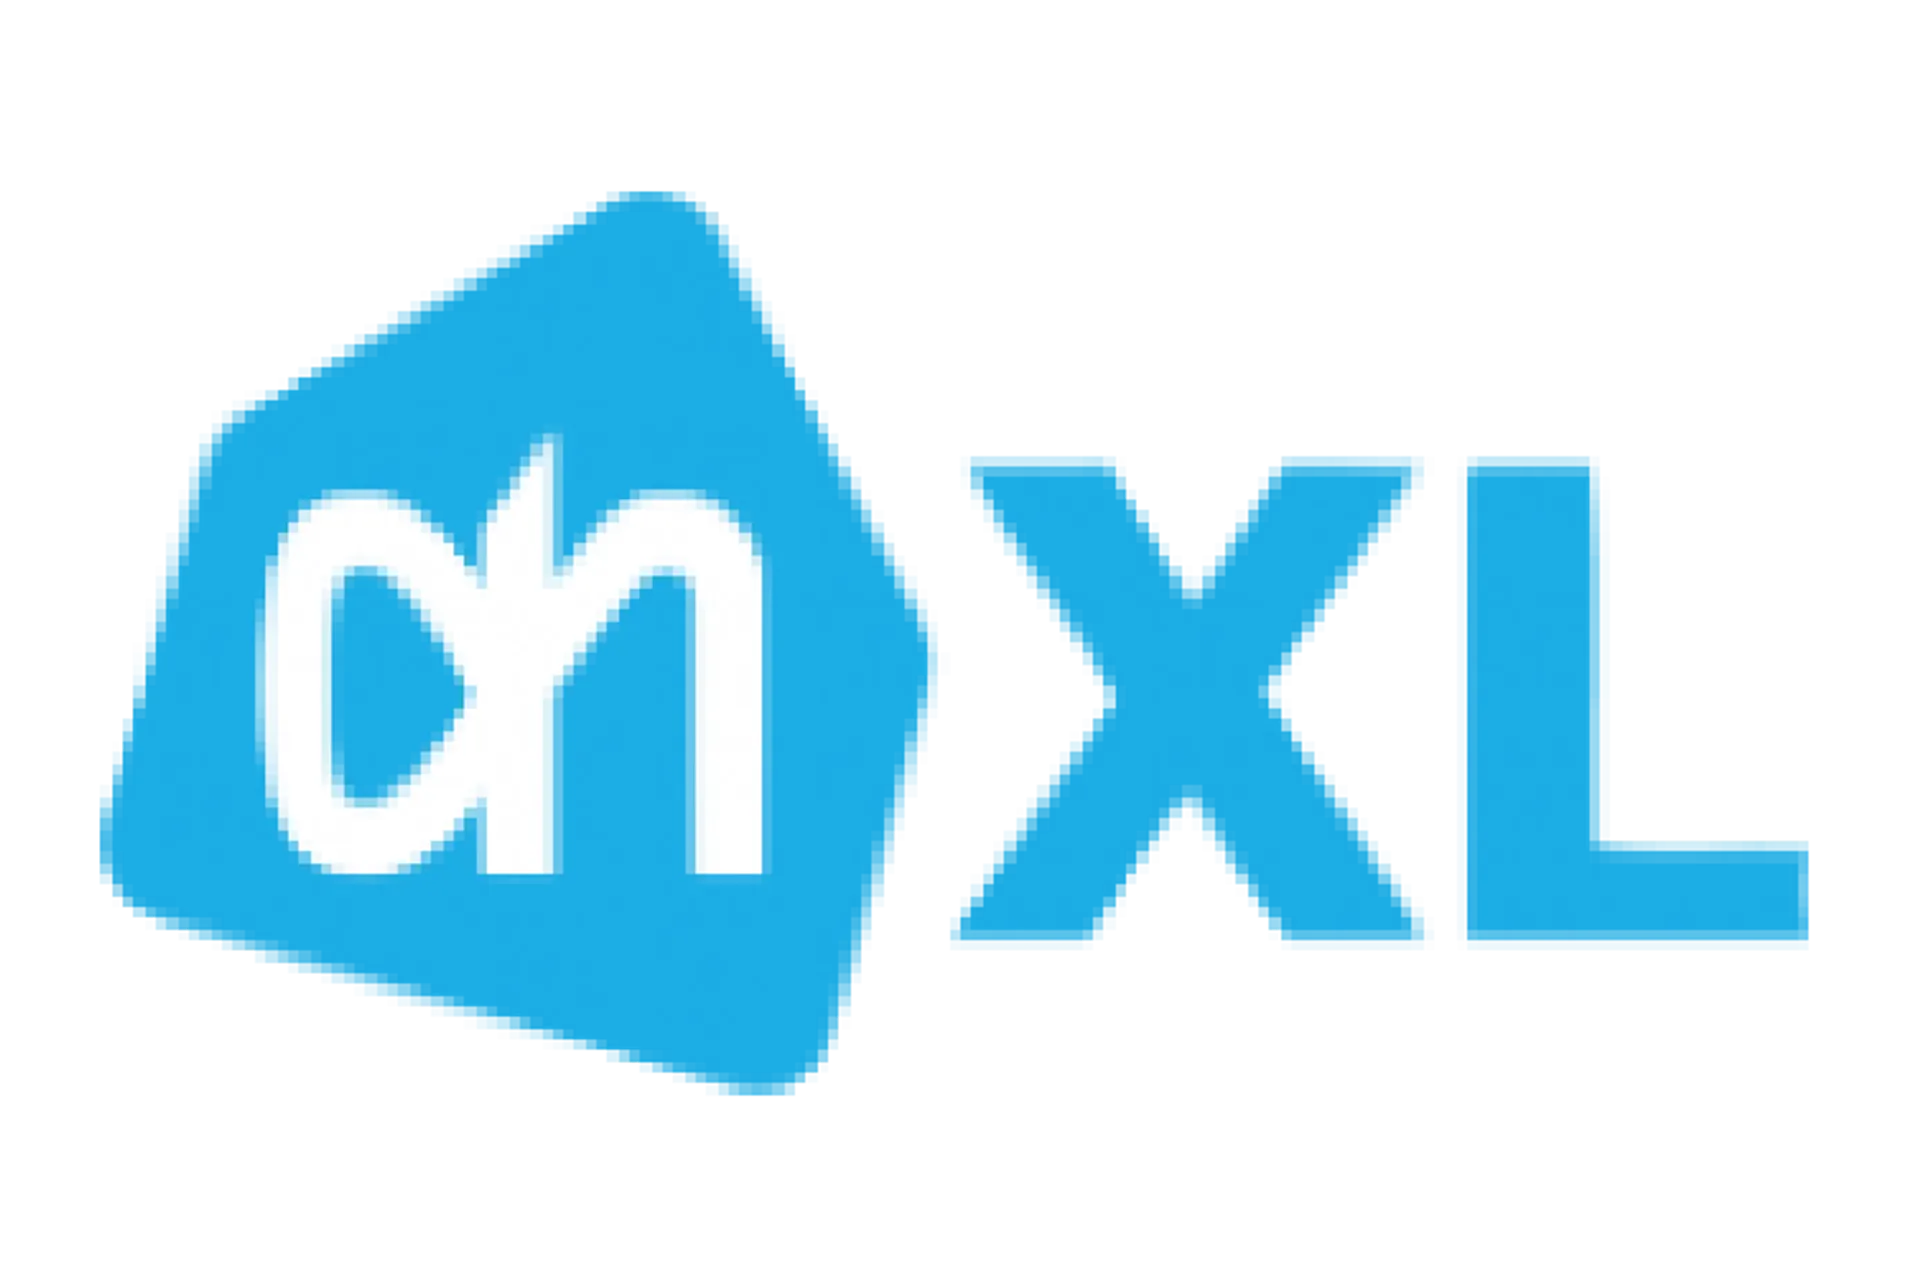 AH XL logo in de folder van deze week